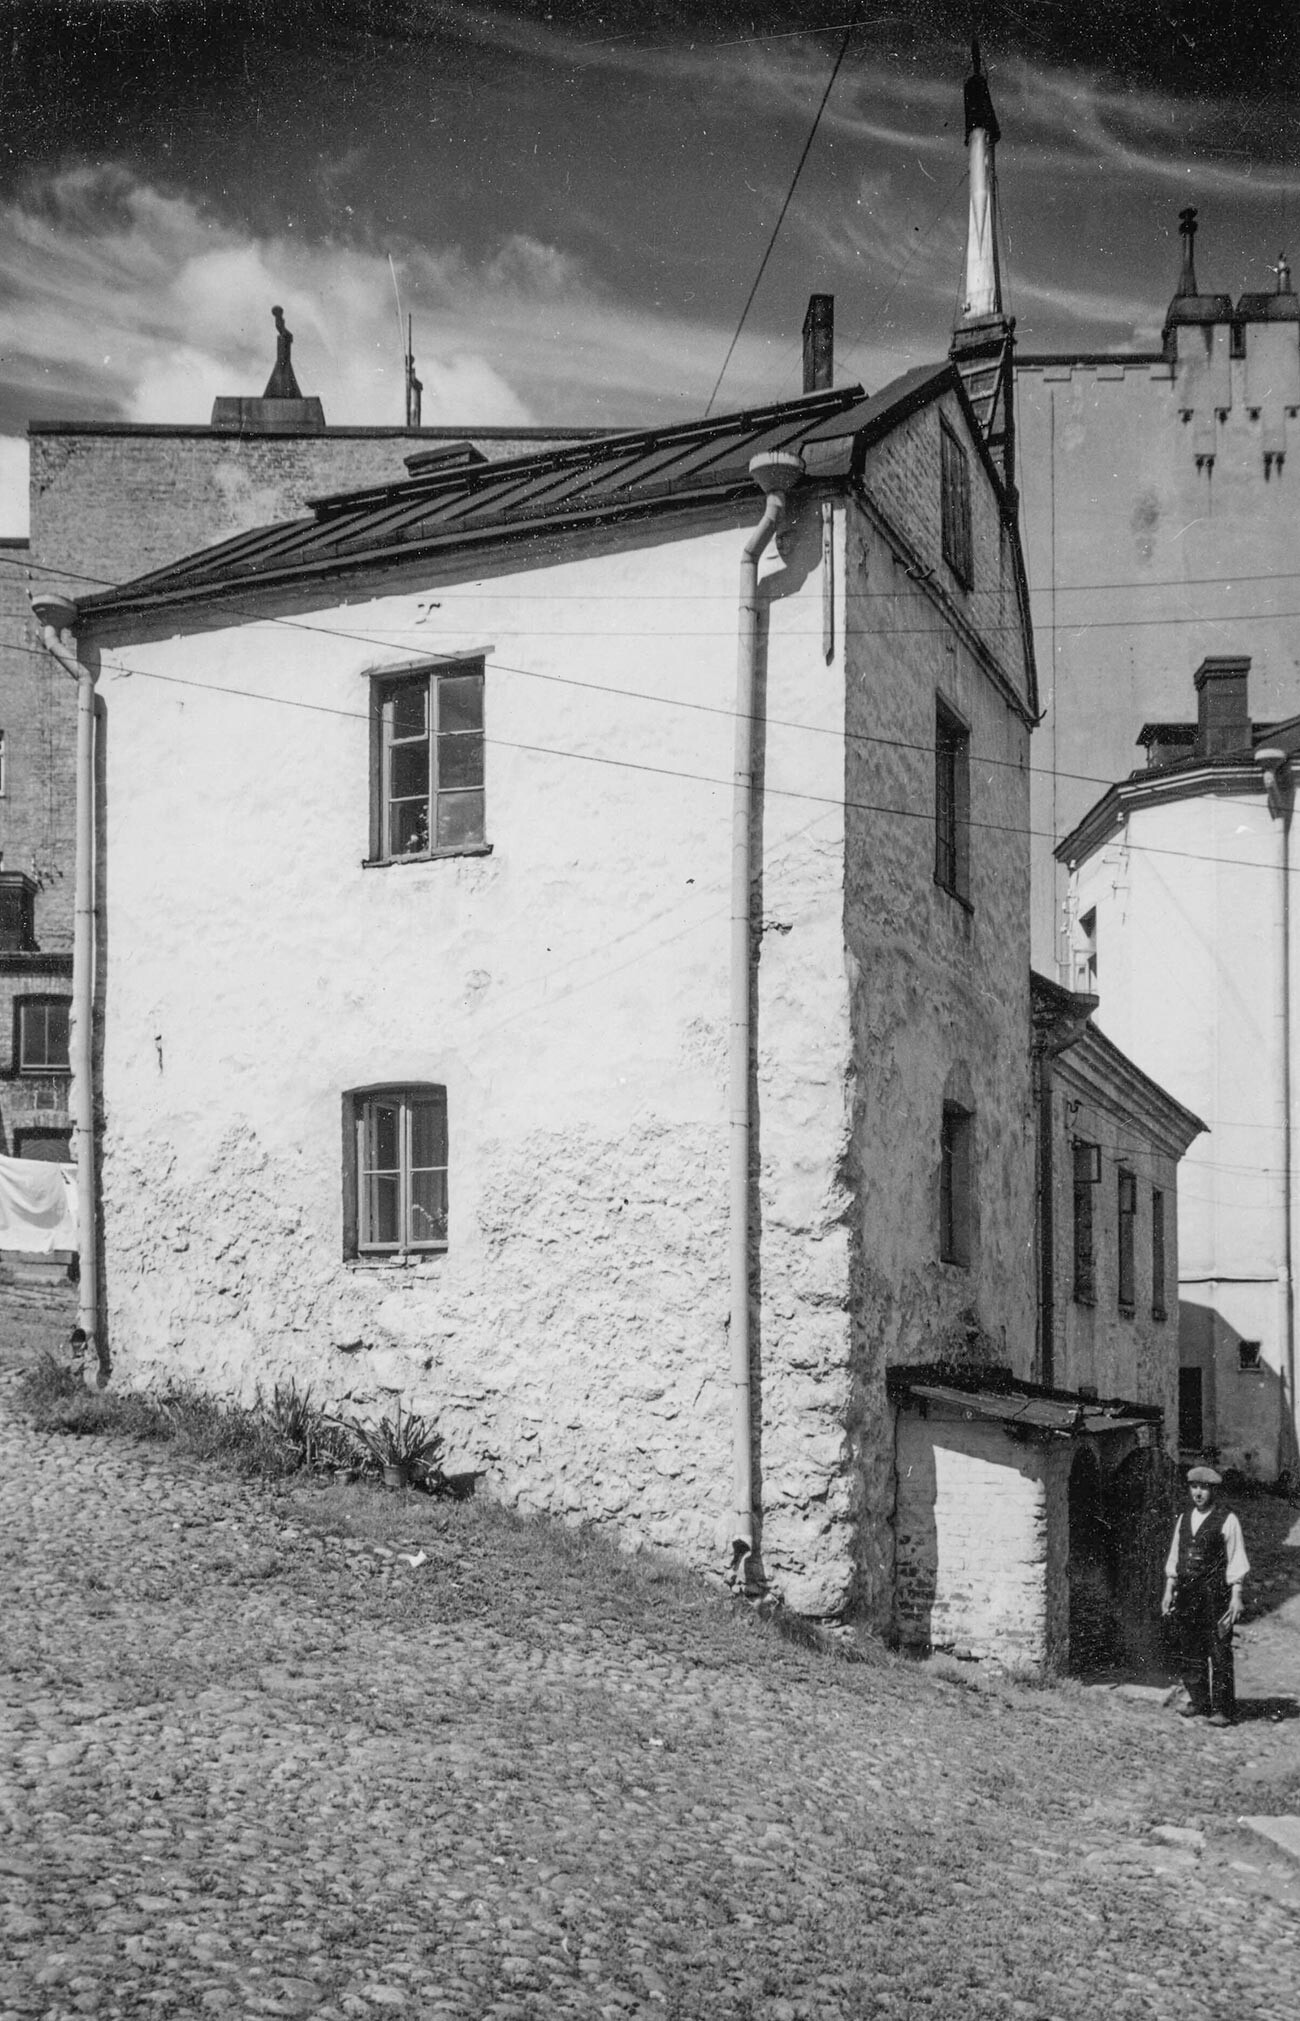 Meščanova hiša 1930-1939, Viborg, Leningrajska regija. Najstarejša stanovanjska stavba v Rusiji iz 16. stoletja